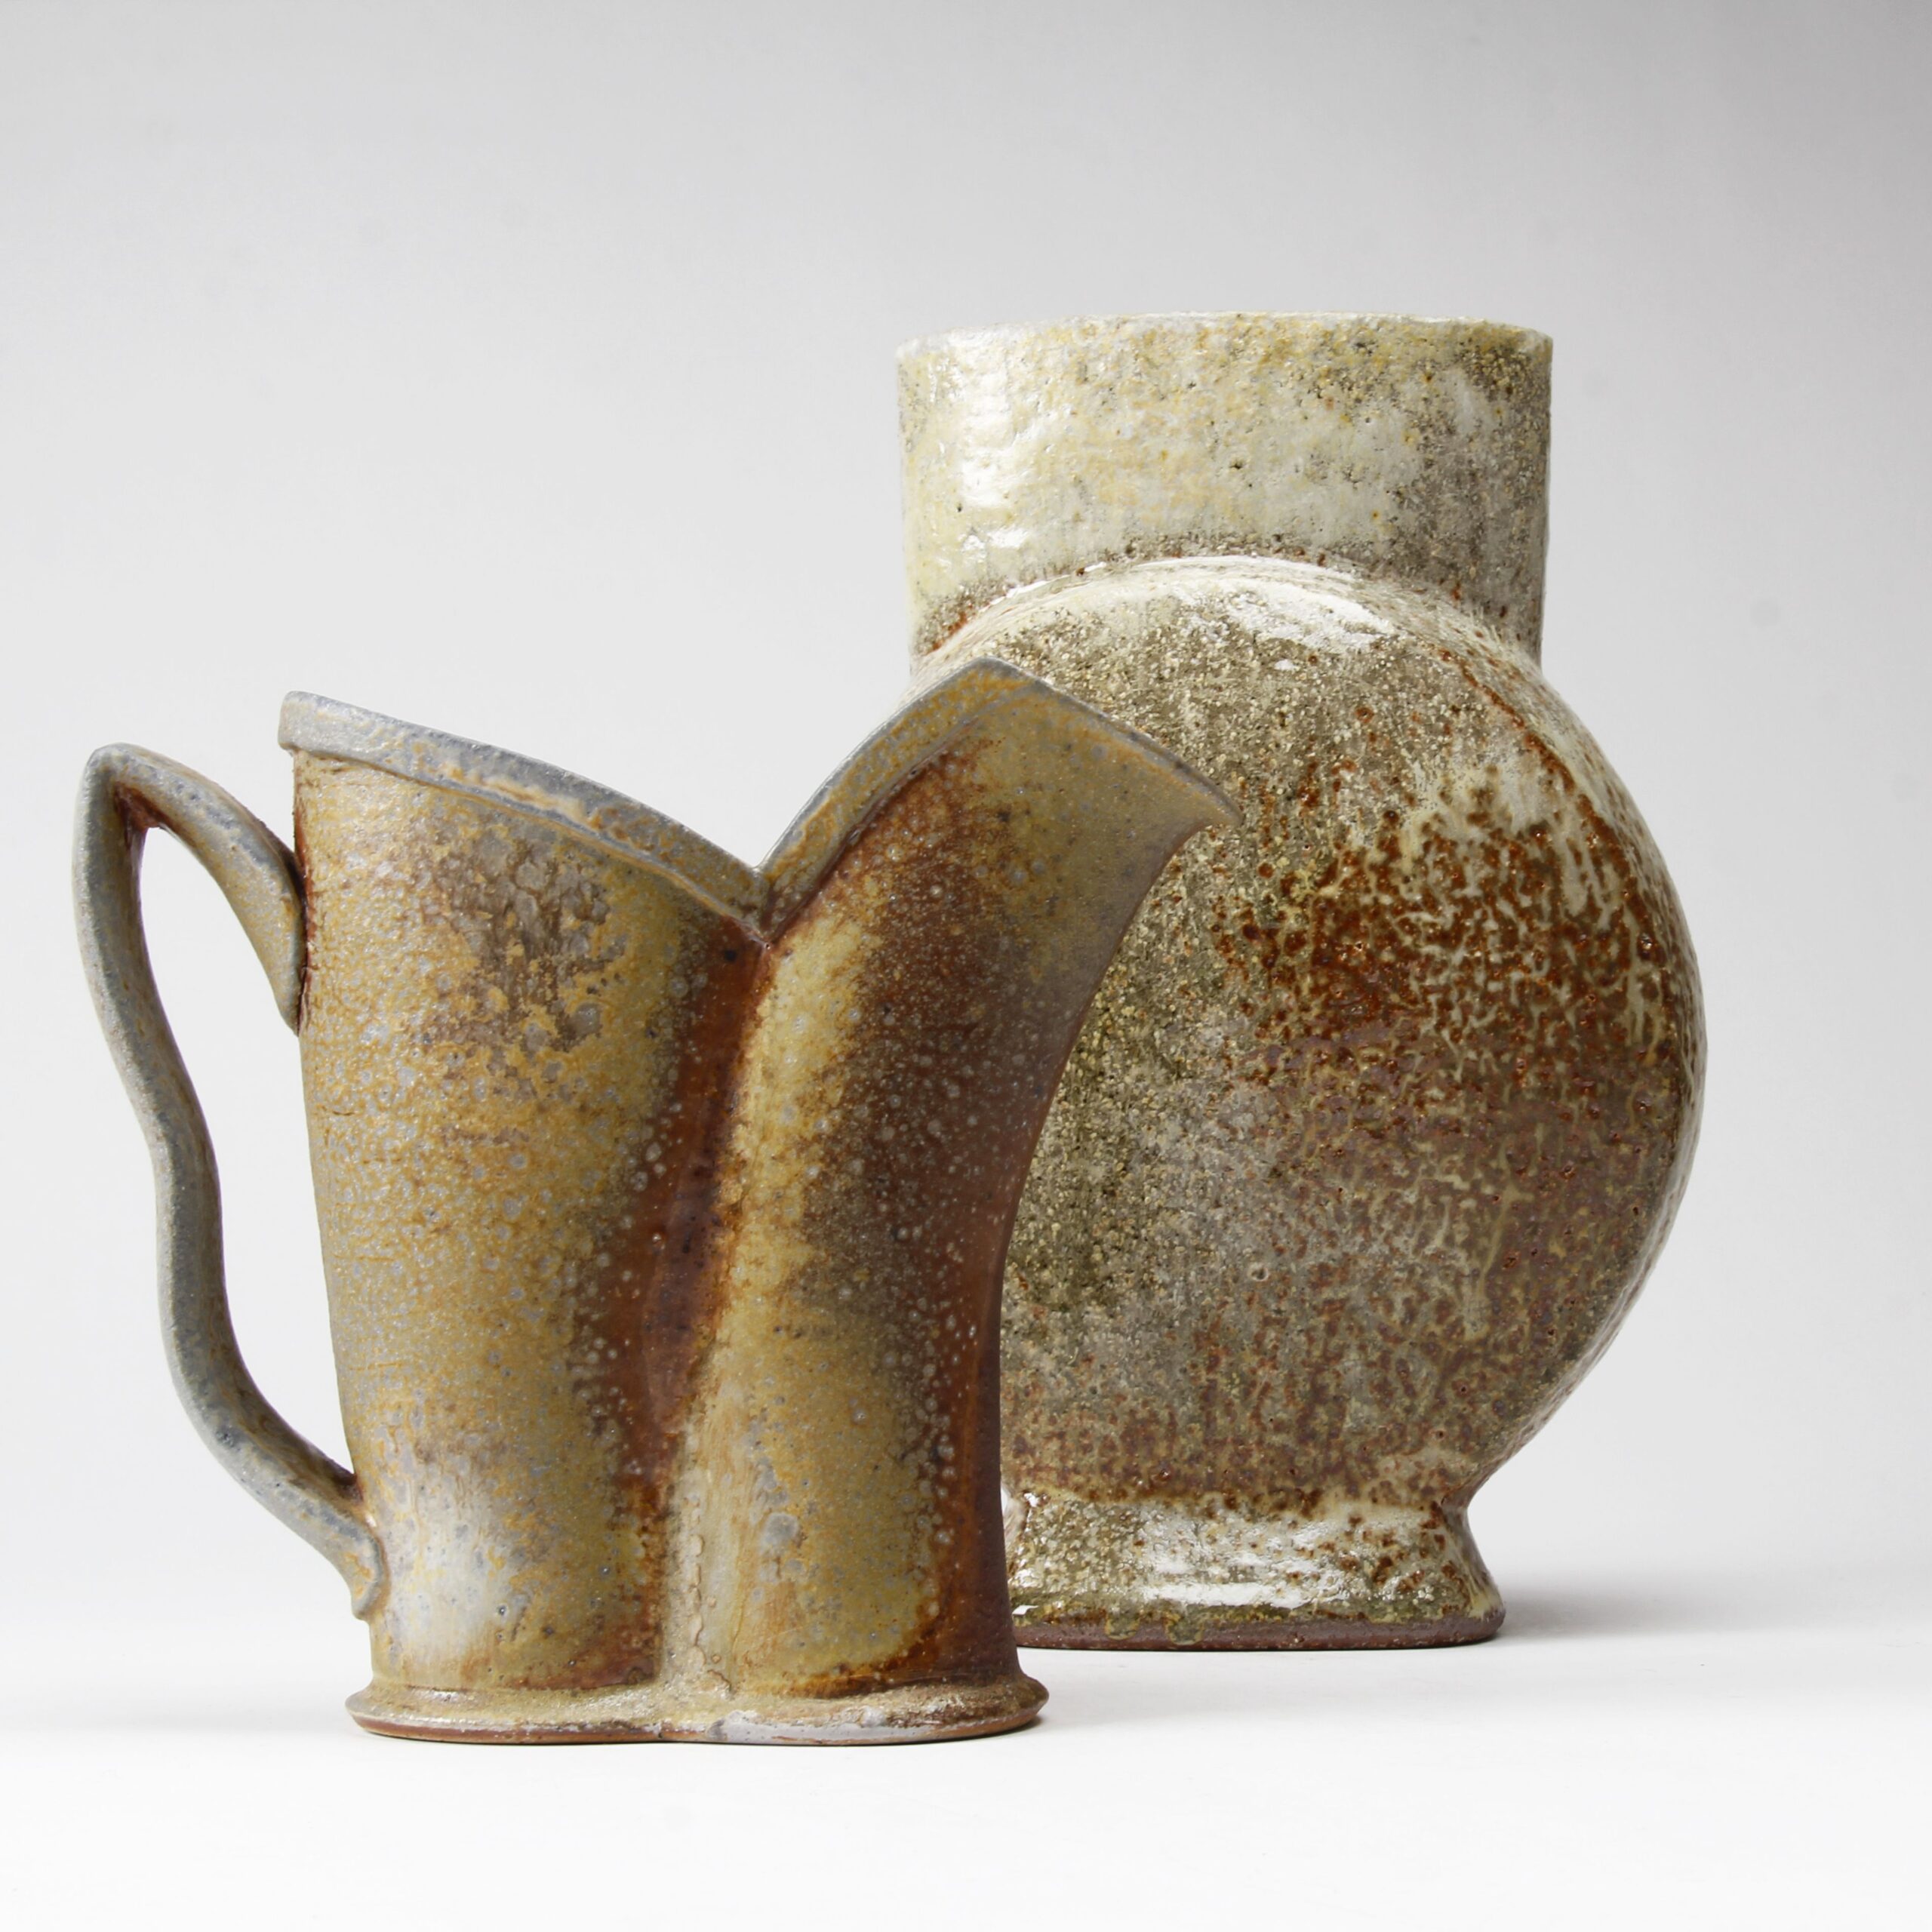 Bruce Cochrane: Vase Product Image 4 of 4